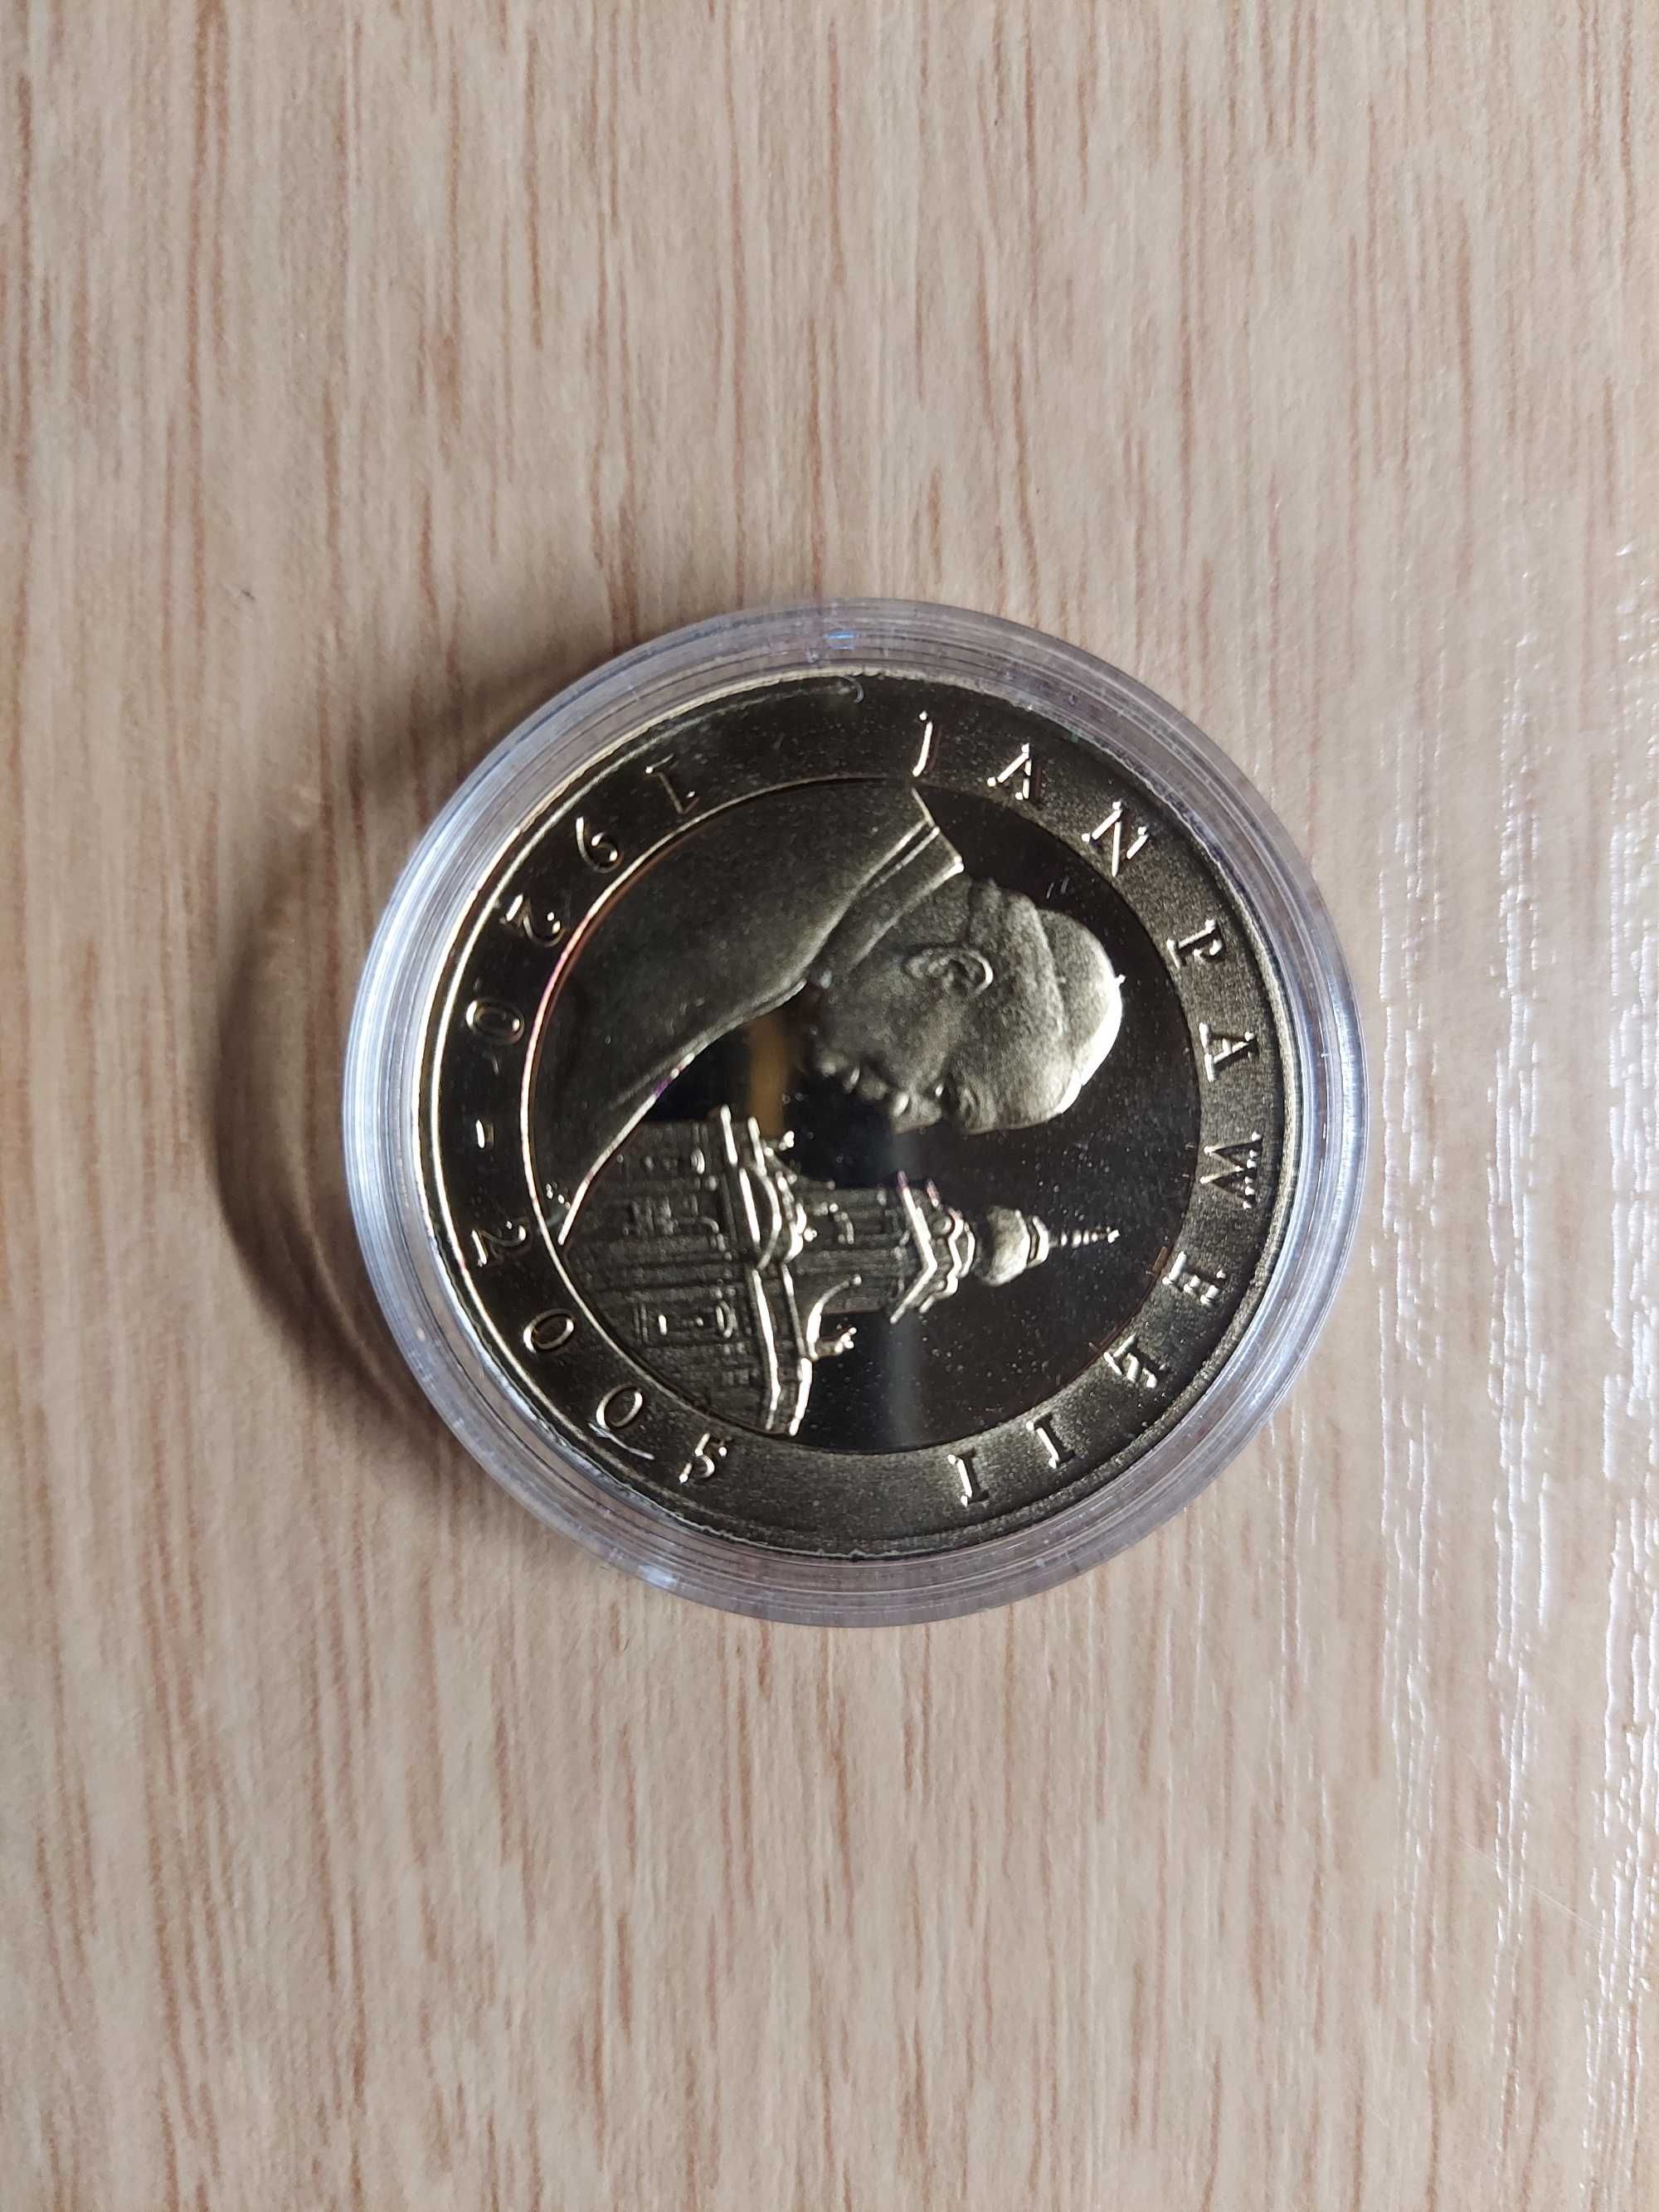 Złoto-srebrna moneta Jan Paweł II 1920 / 2005, 10 pln z 2005 roku